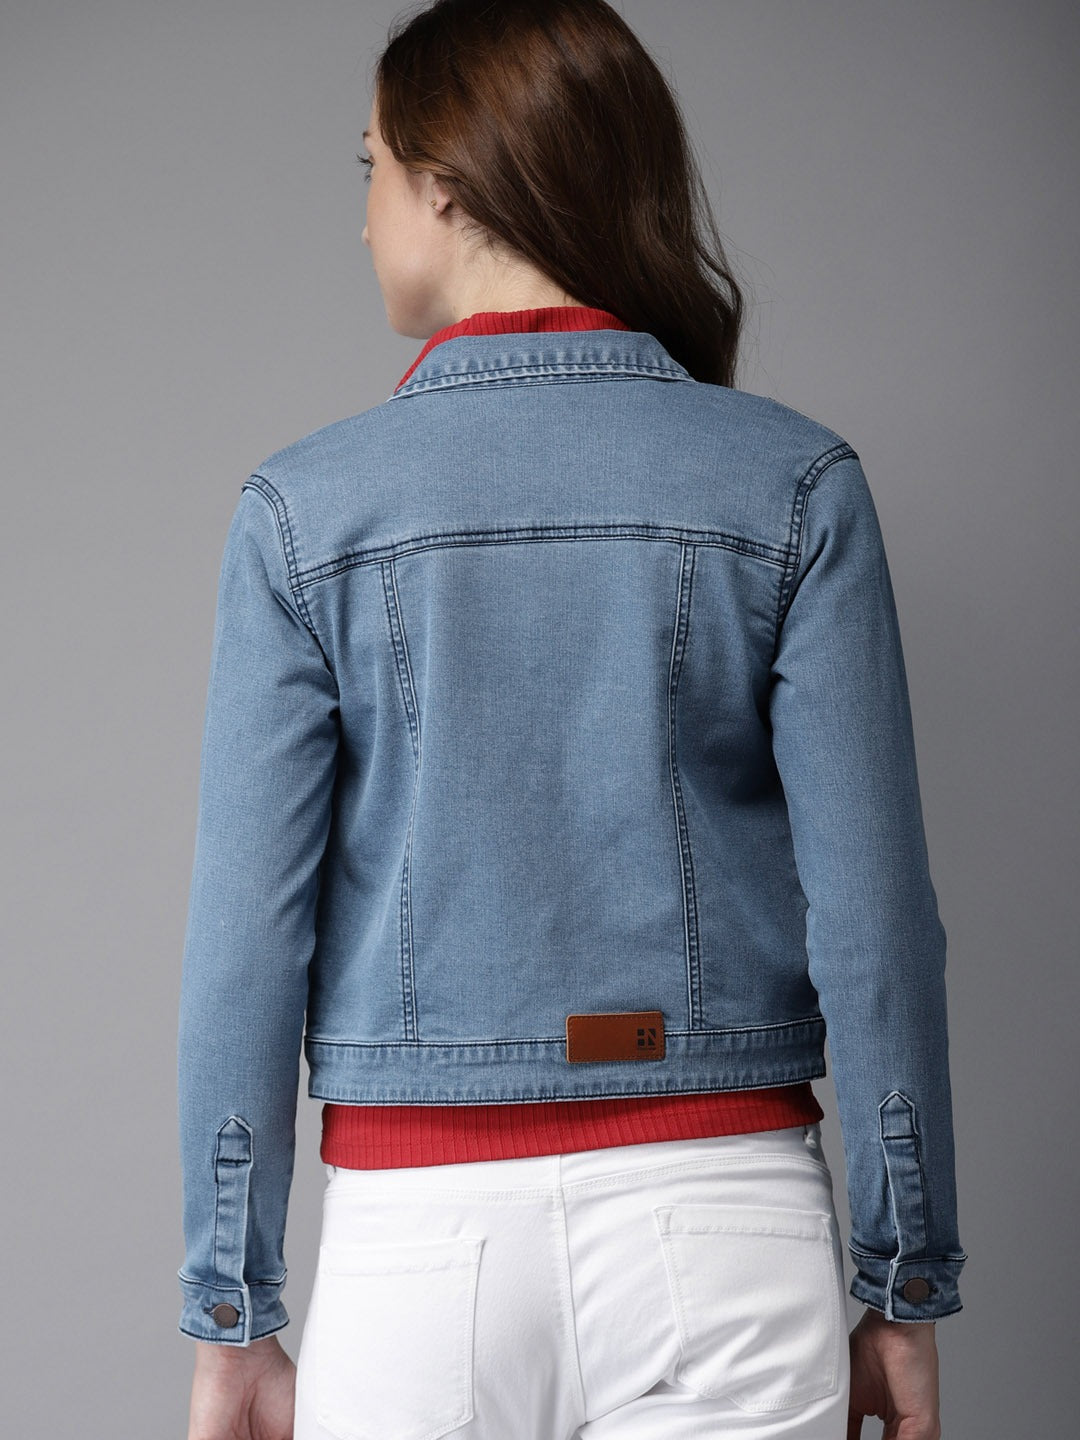 Stylish blue denim jacket with white stitching for fashionable women